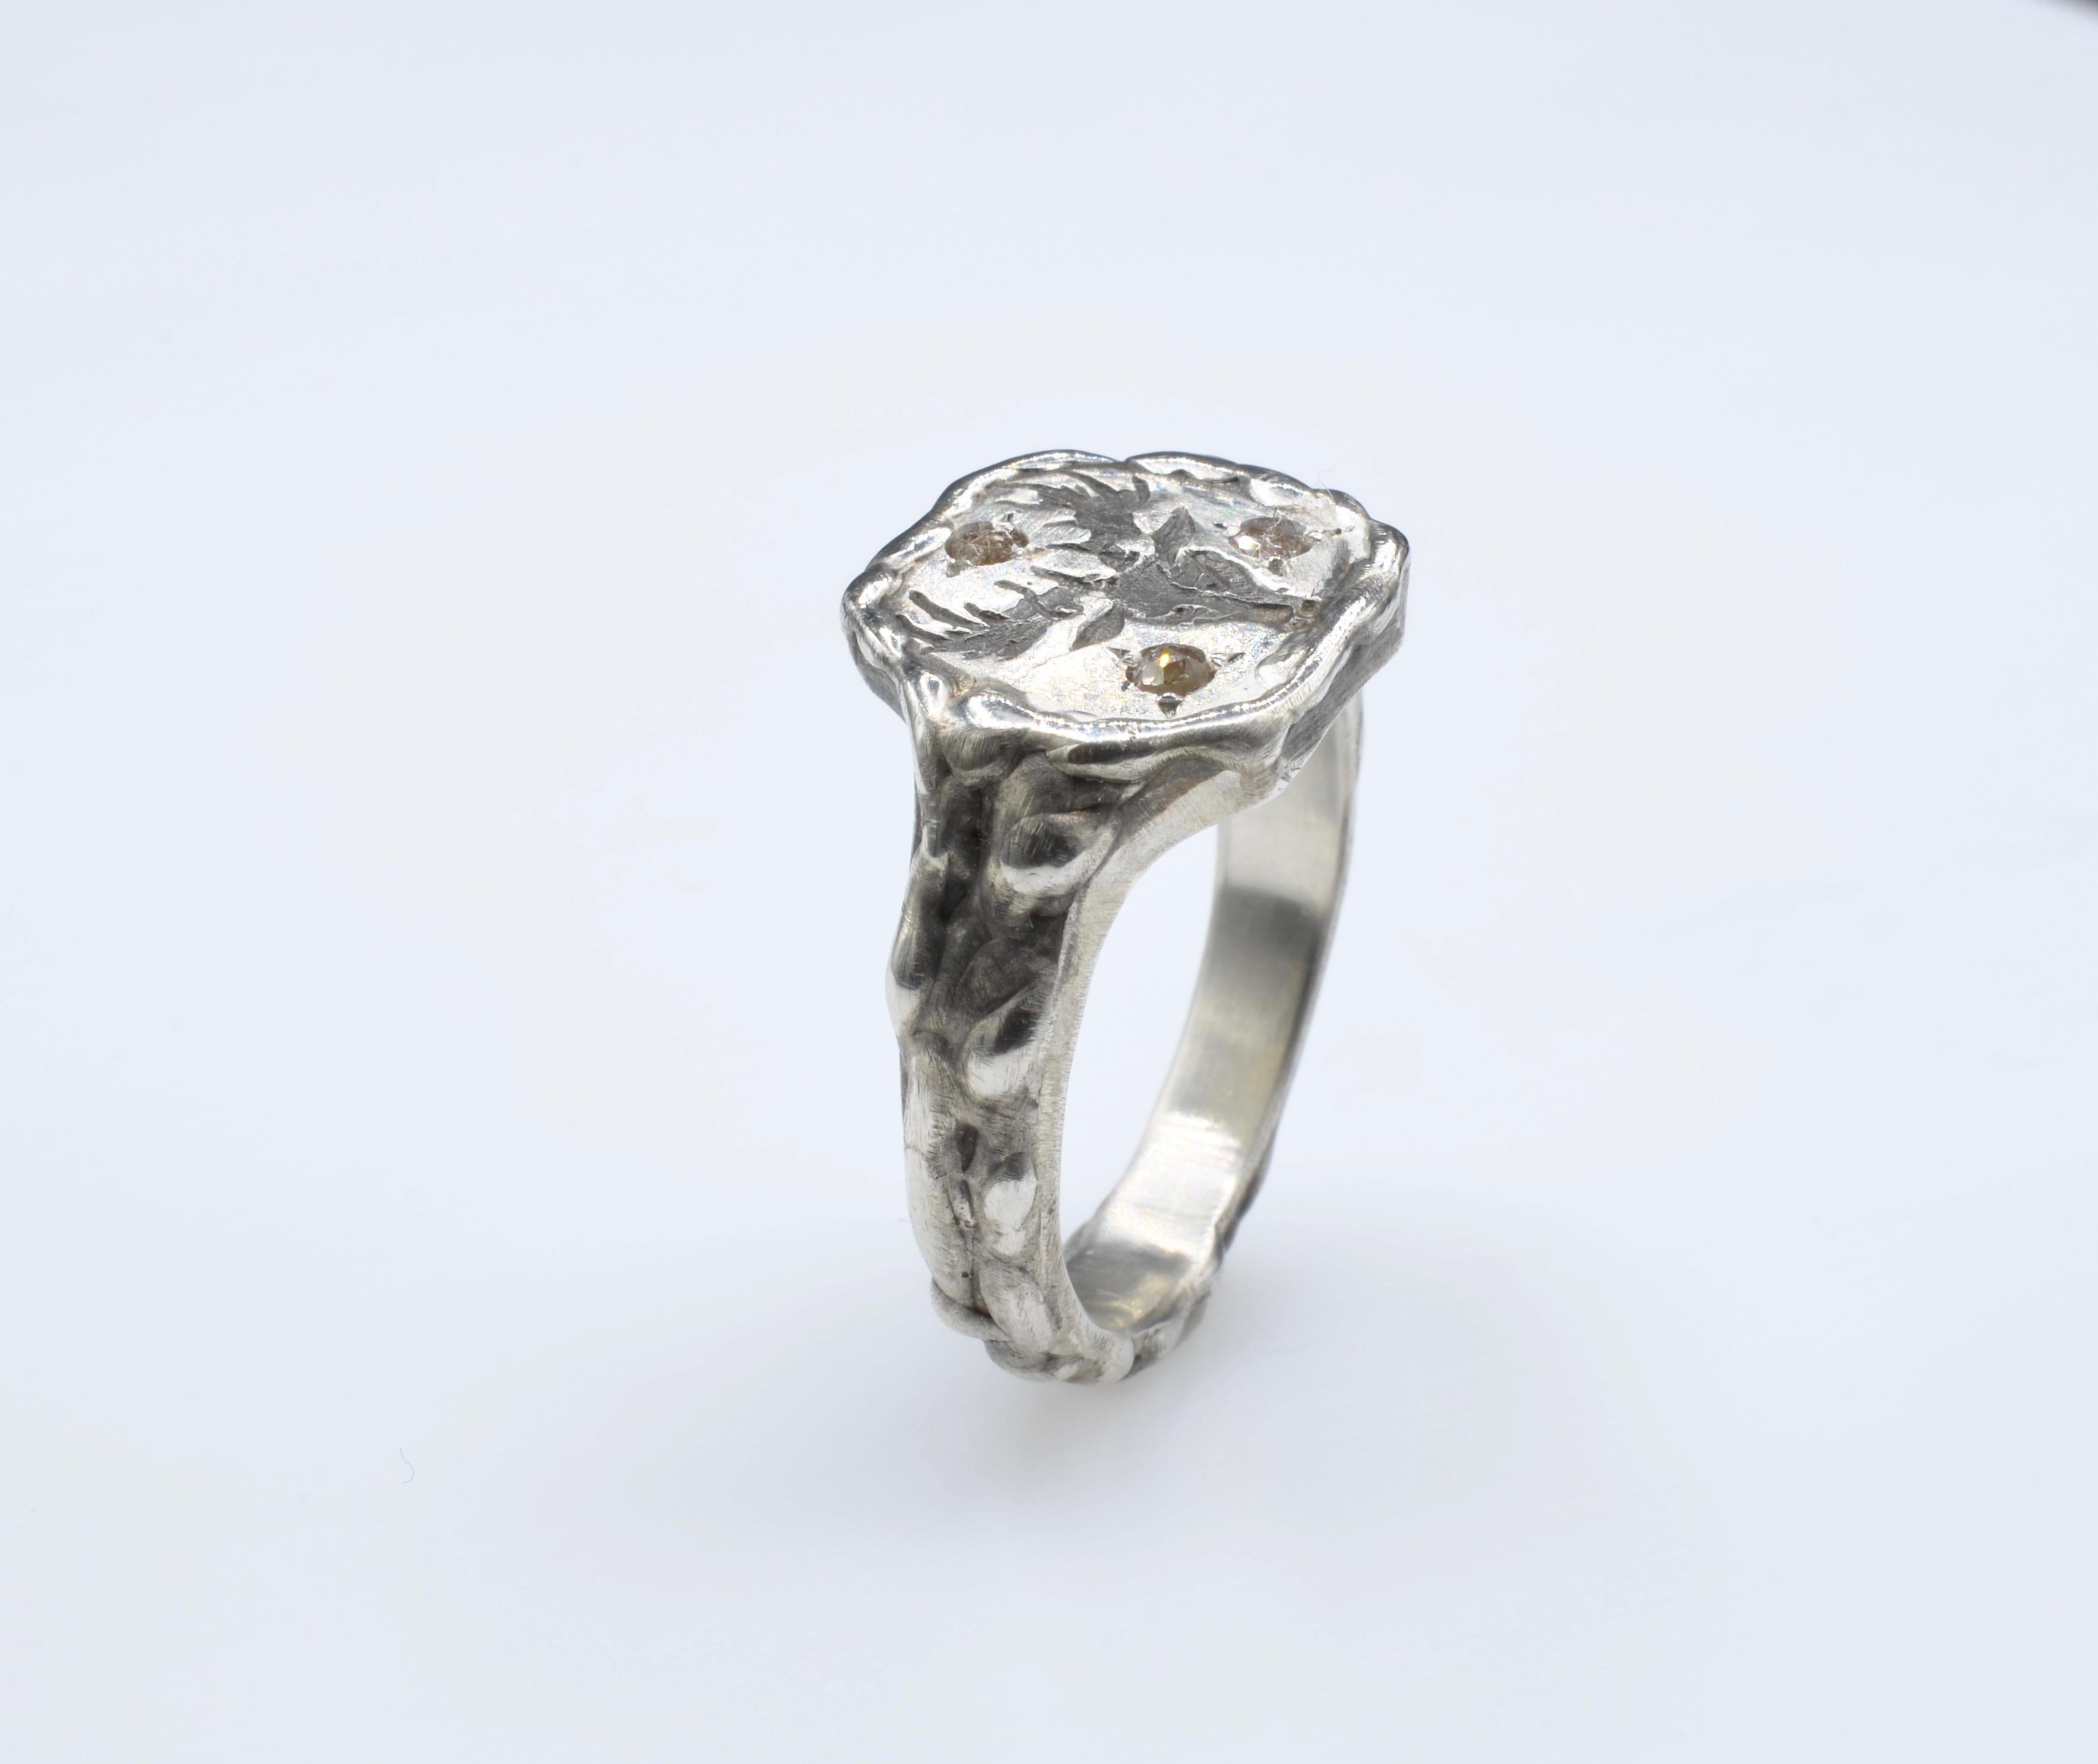 Sterling 925 Silber Ring mit einem lieben Kopf als Siegel, mit 3 Diamanten besetzt Rose geschliffen hellbraune Farbe in einem Korn Einstellung. Einzigartig, hergestellt in Nordkalifornien, USA.
Größe 8, kann verkleinert oder vergrößert werden.
